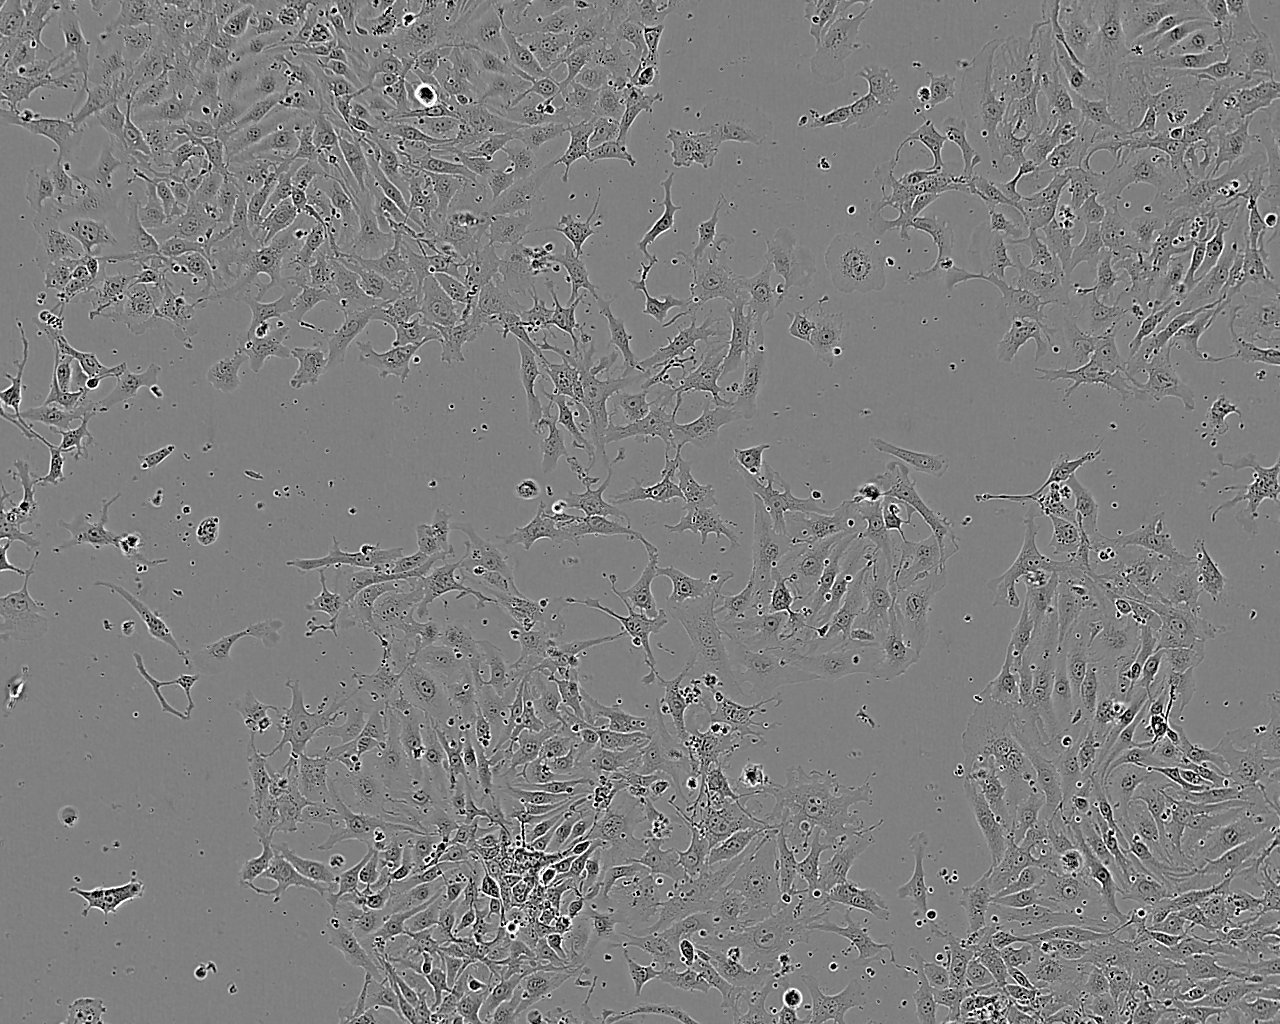 LMH epithelioid cells鸡肝癌细胞系